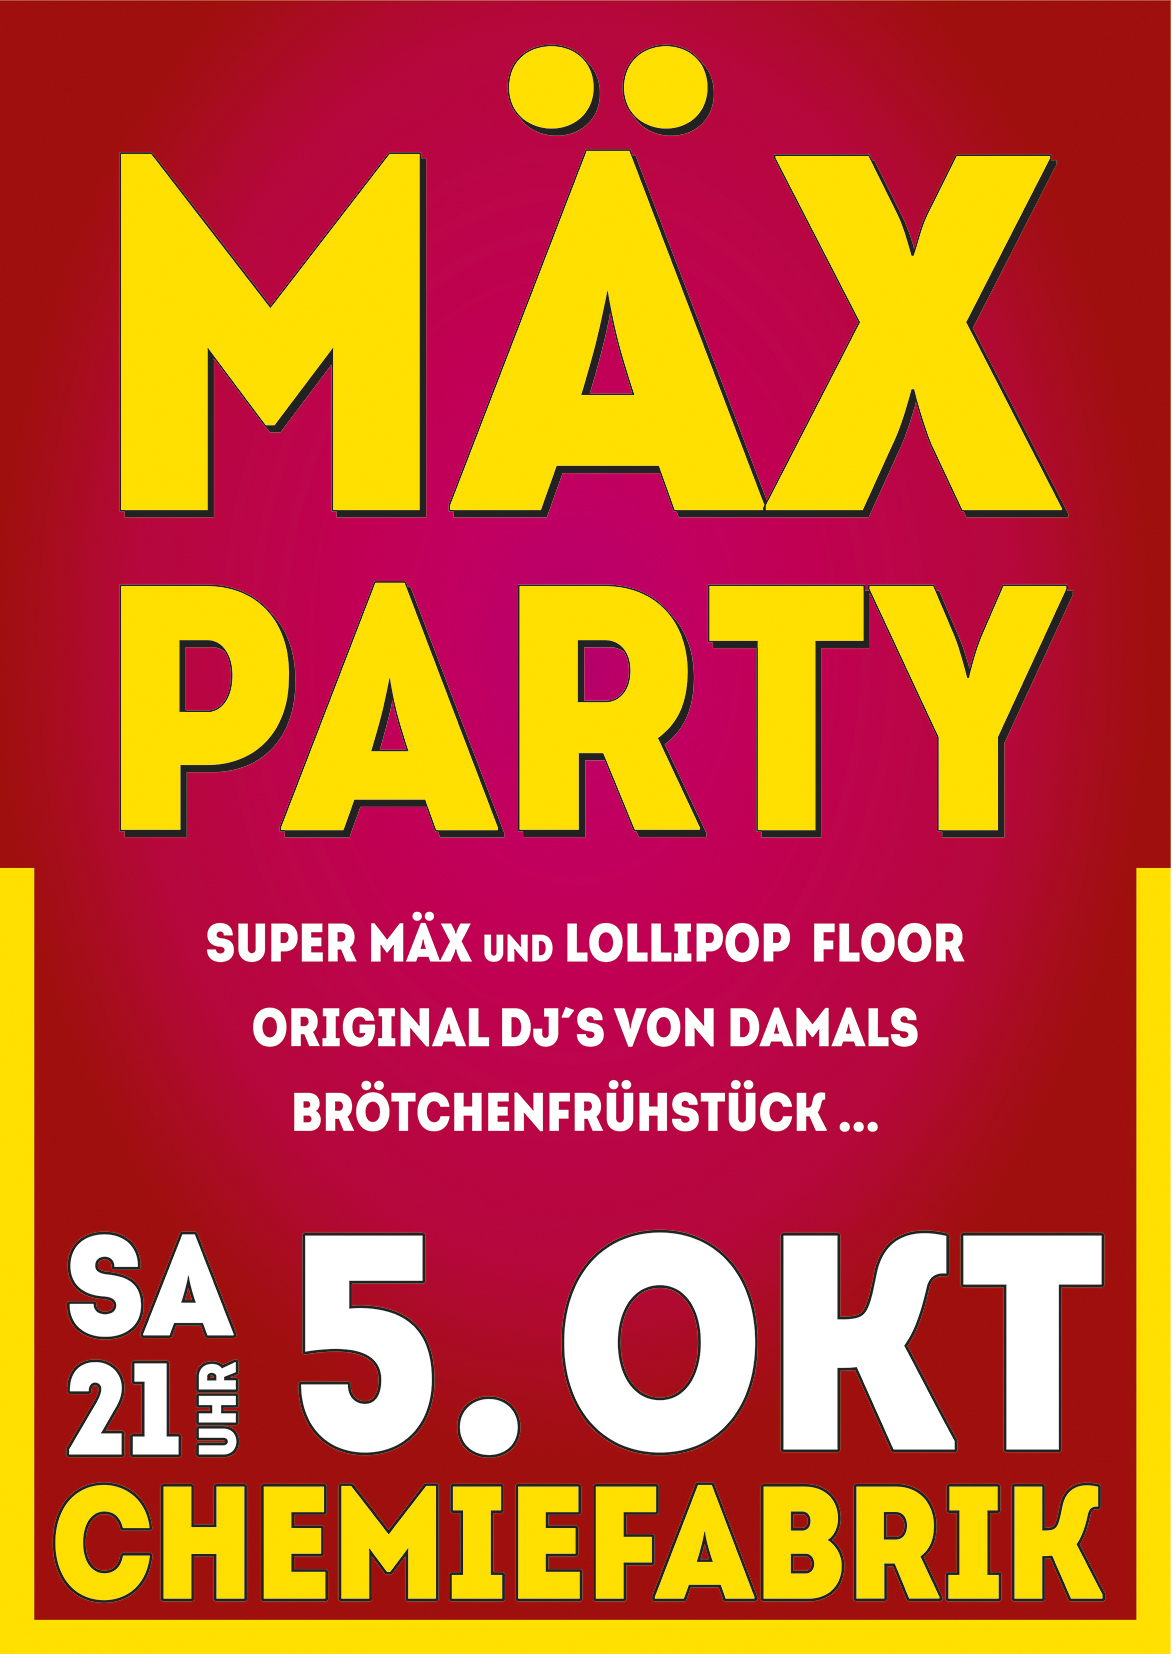 Mäx Party auf 2 Floors